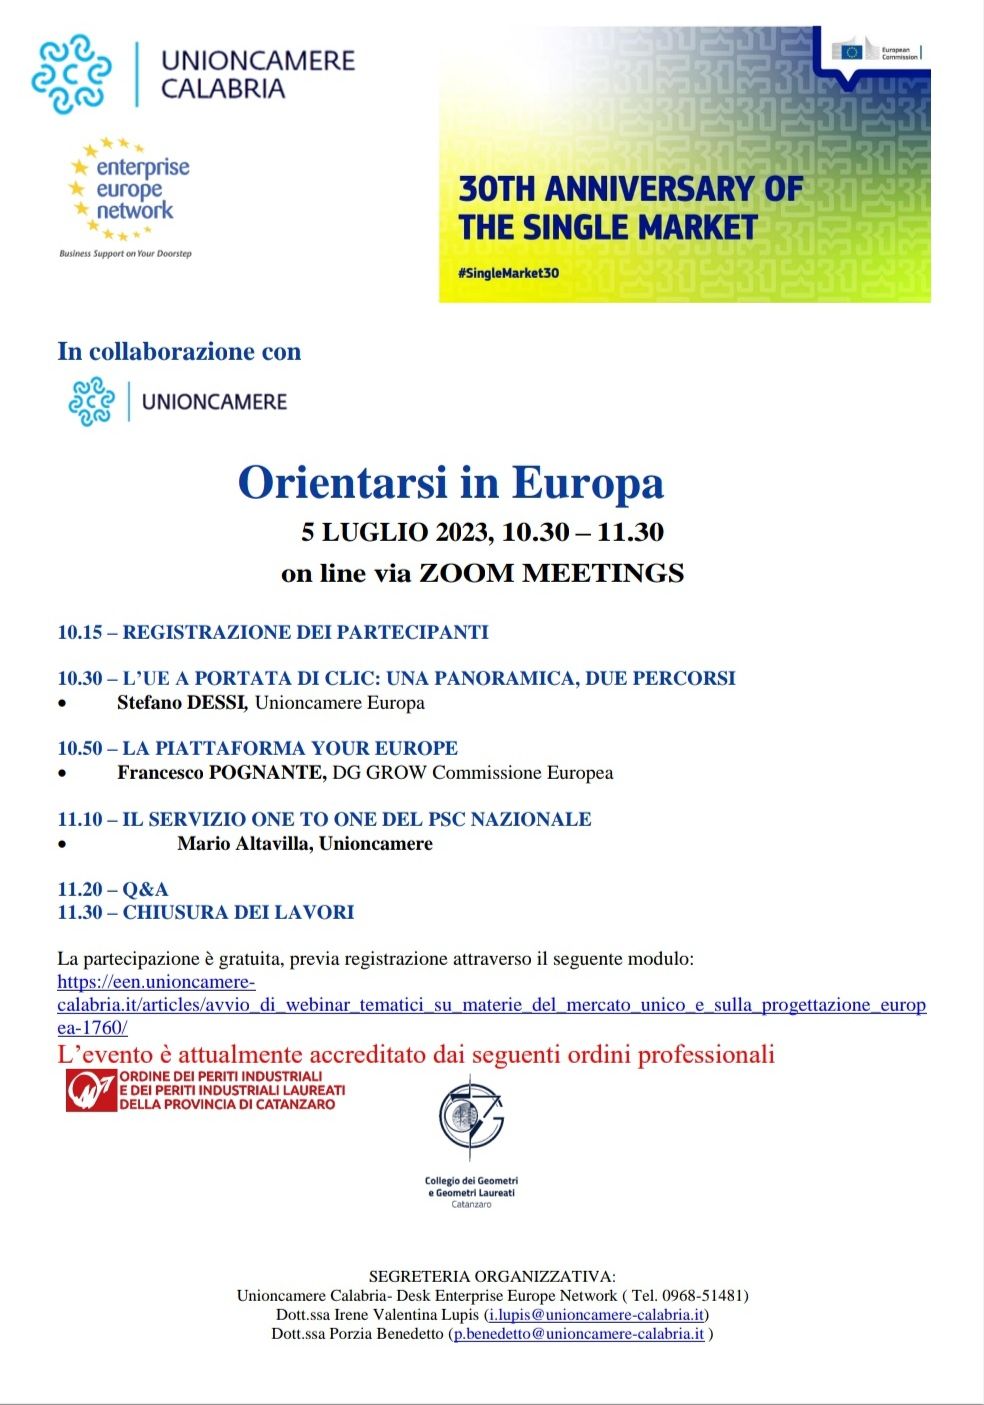 Webinar "ORIENTARSI IN EUROPA " 5 luglio 2023 ore 10.30-11.30 - Avvio percorso formativo gratuito on line su tematiche del Mercato Unico e Europrogettazione